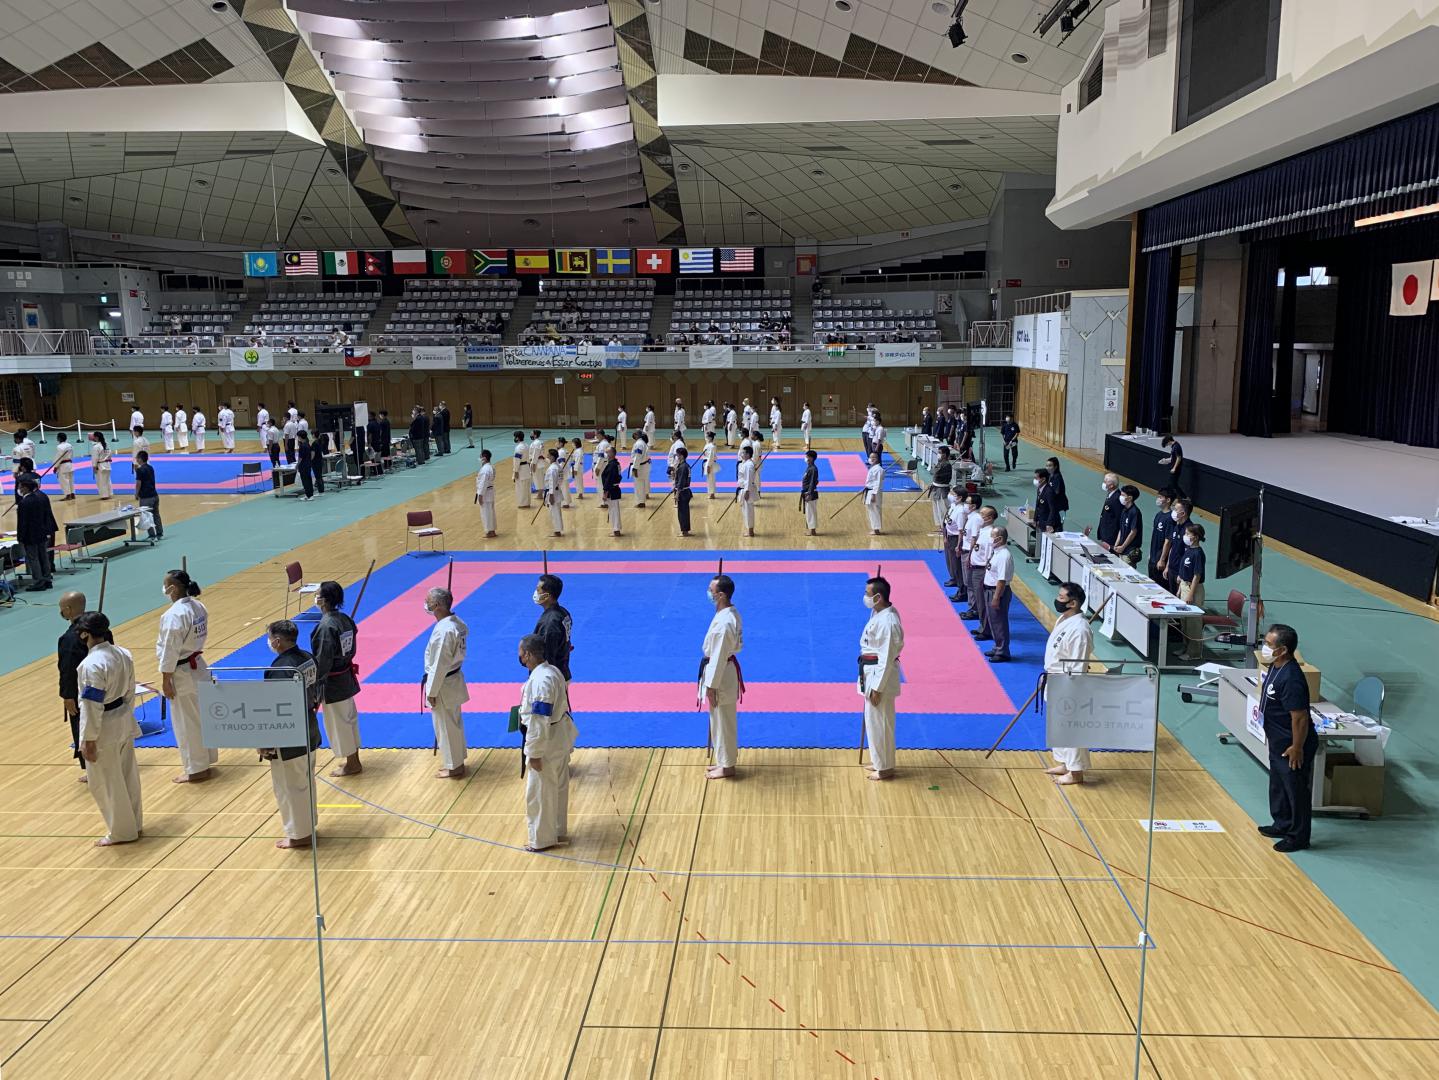 Adultes 2 bo - Stef en 8ème de finale - Okinawa karate world championships 2022